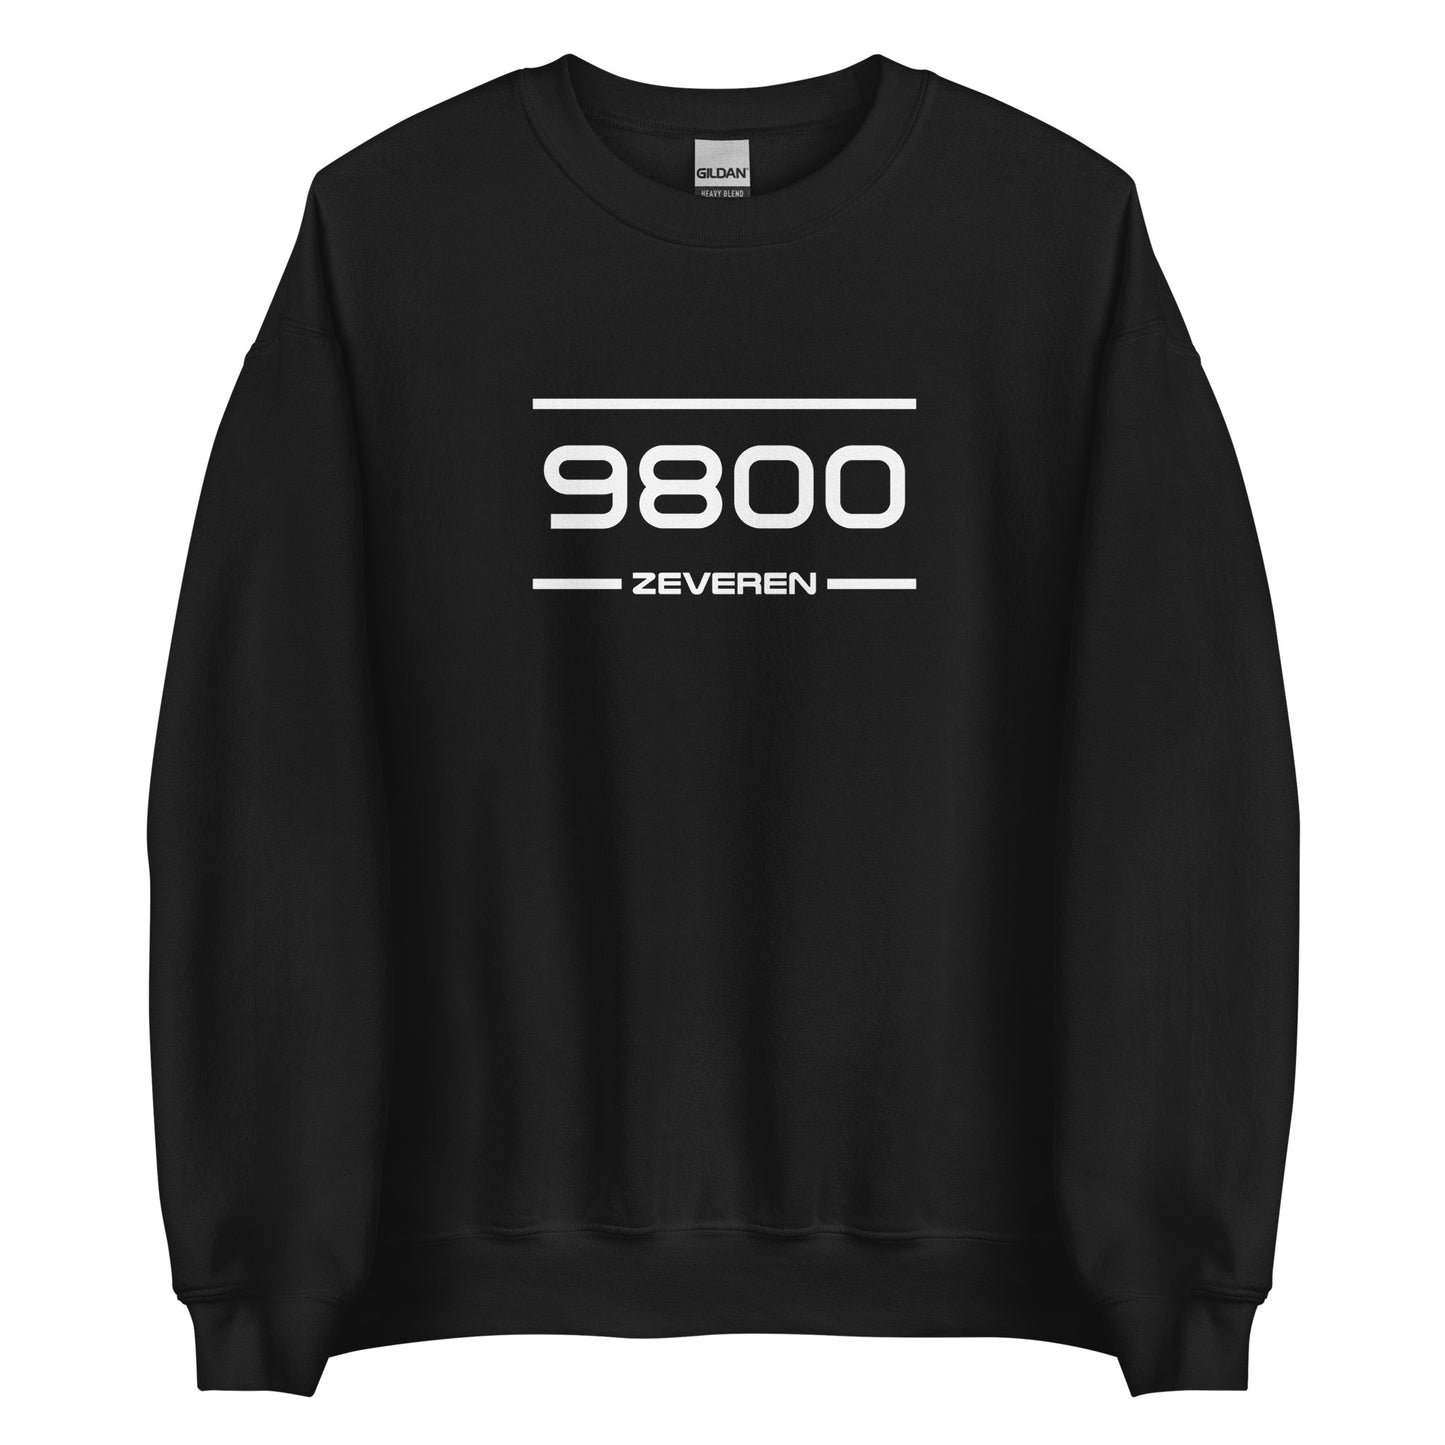 Sweater - 9800 - Zeveren (M/V)